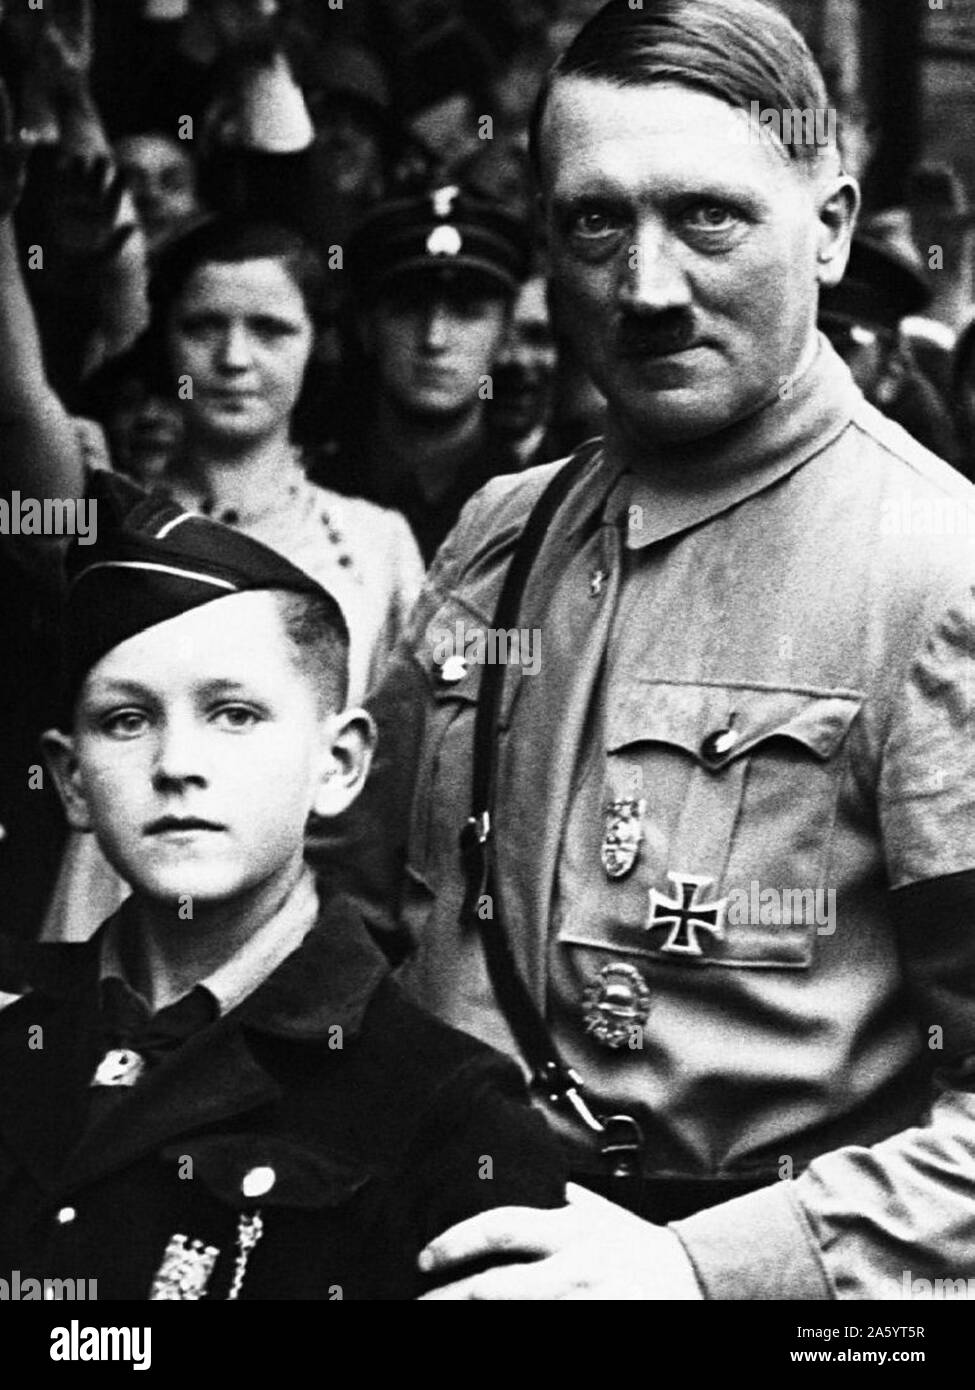 Adolf Hitler 1889-1945, deutsche Nazi-Führer, gesehen mit einem jungen Hitler Jugend Mitglied 1934 Stockfoto